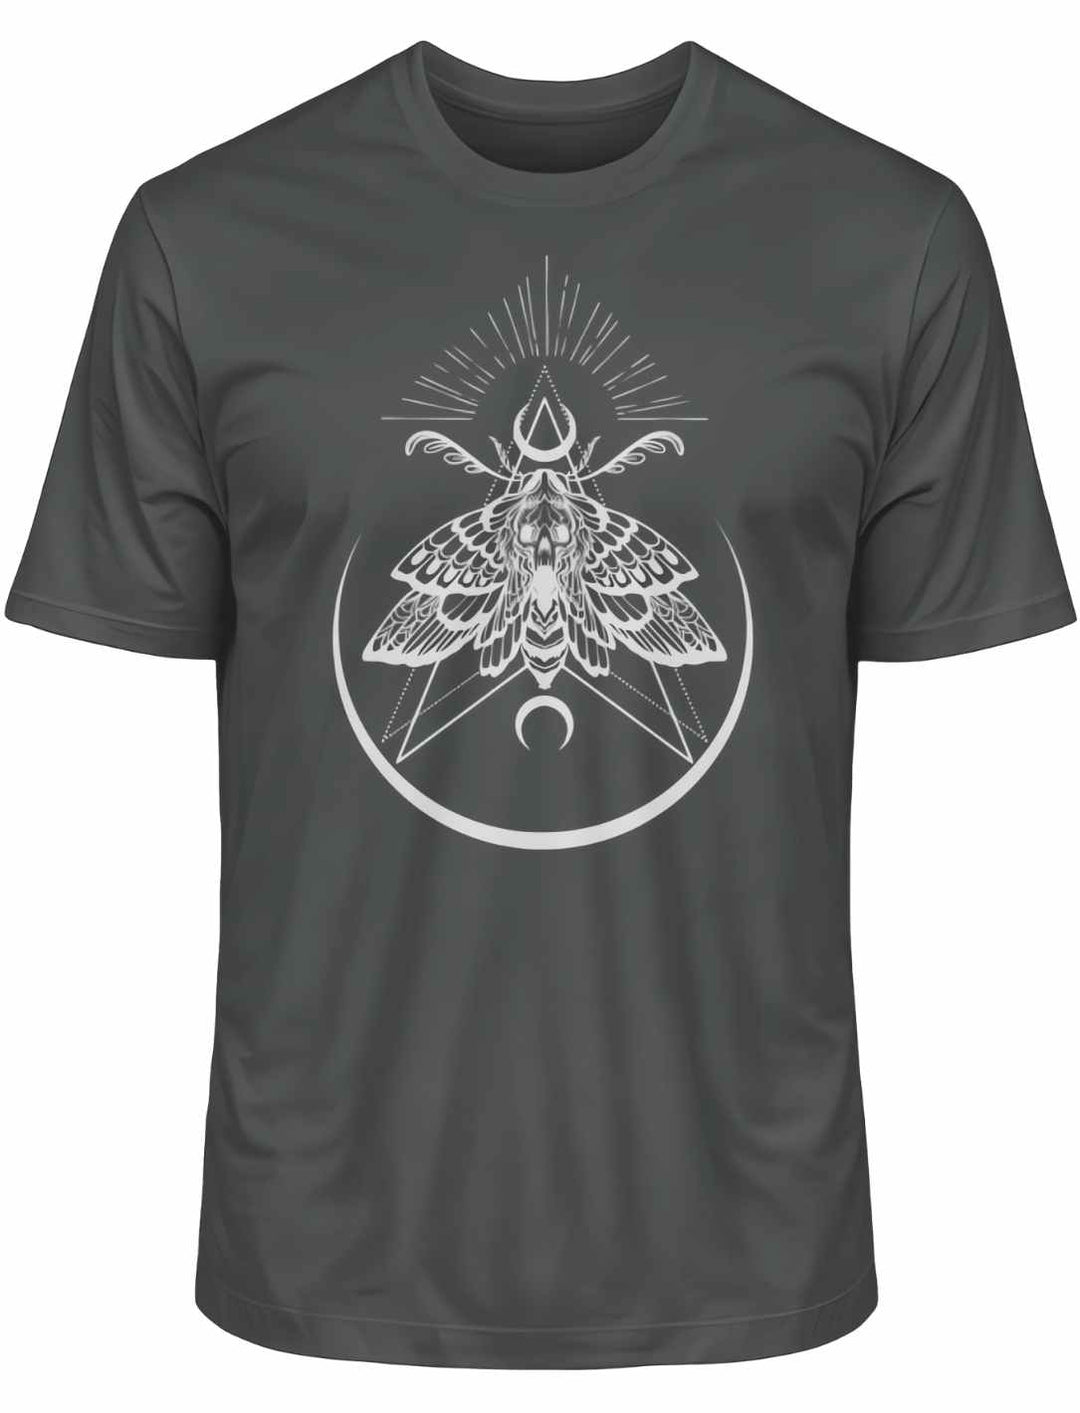 Anthrazitfarbenes T-Shirt 'Lichtbringer der Verwandlung' mit symbolischem Nachtfalter, liegend auf weißer Oberfläche.